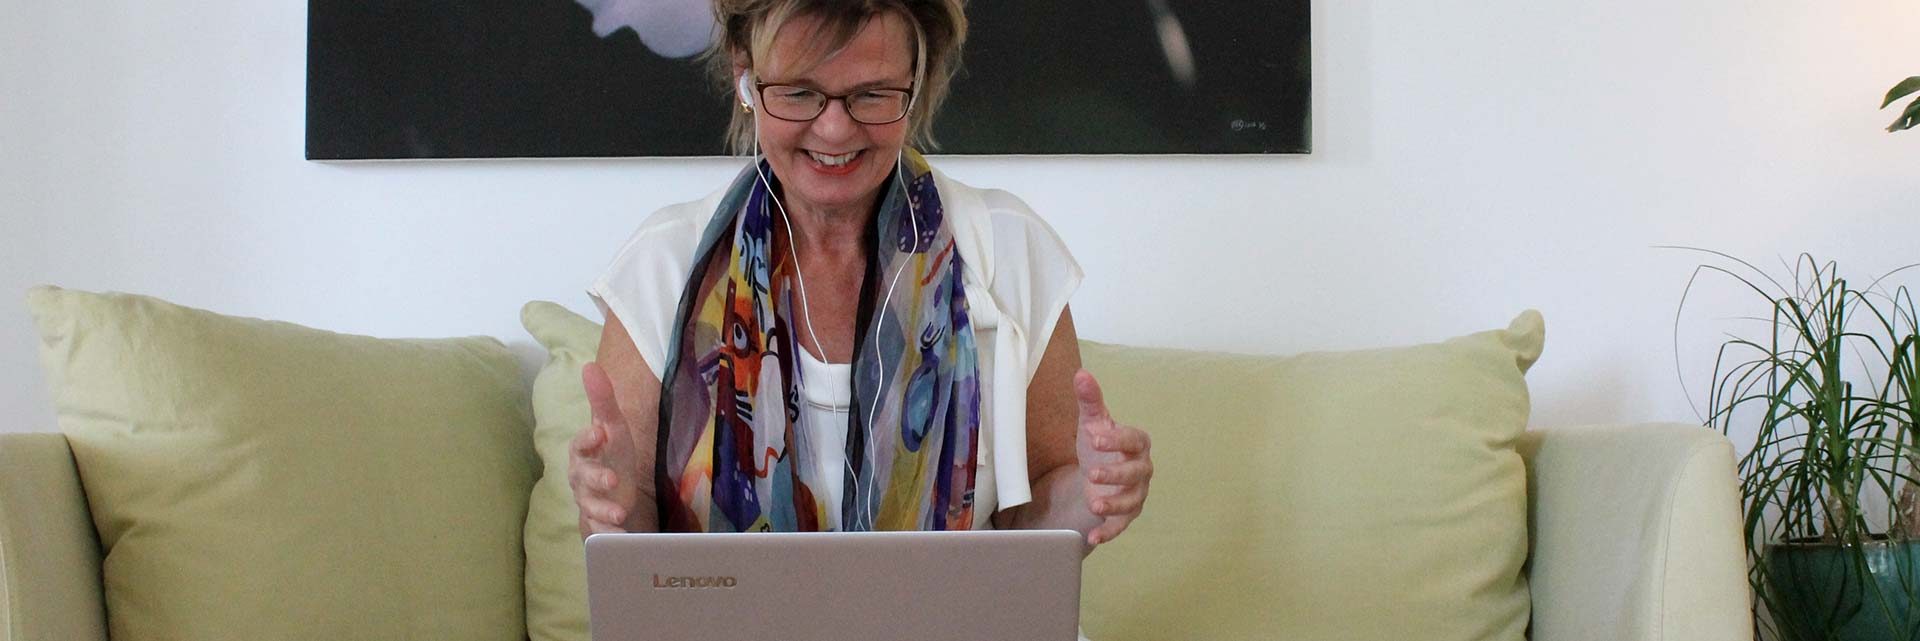 Digital coach på distans, online med dator, säljcoach ledarcoach sittande glad kvinna med fototavla bakom